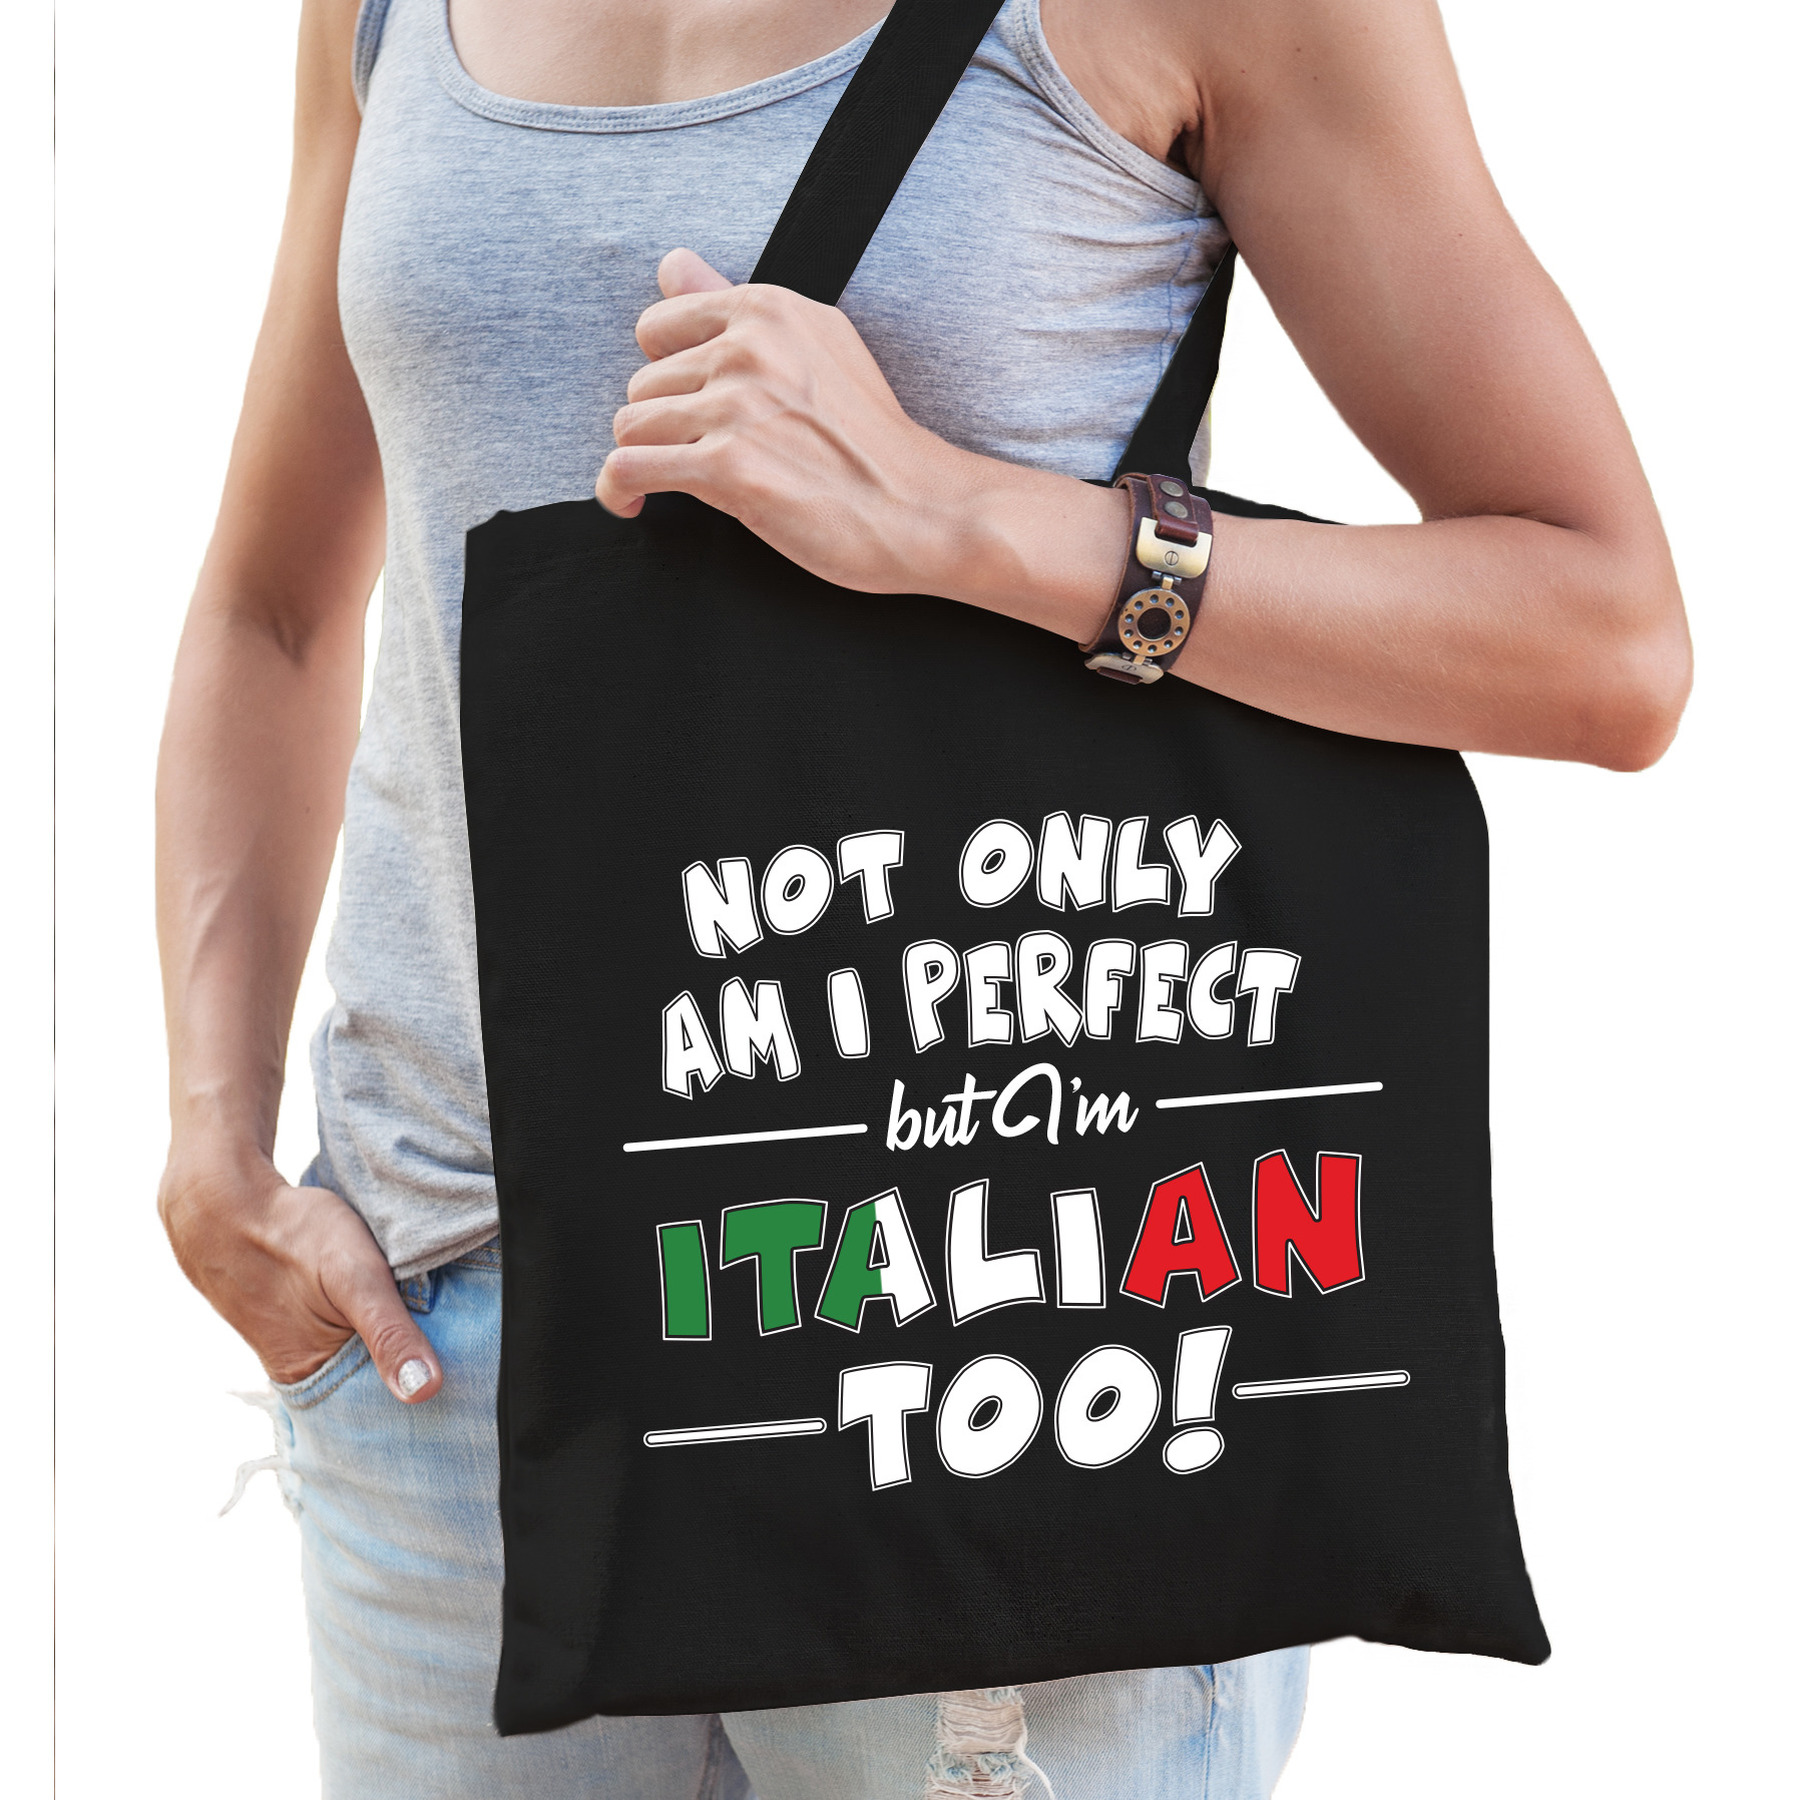 Not only perfect Italian-Italie cadeau tas zwart voor dames